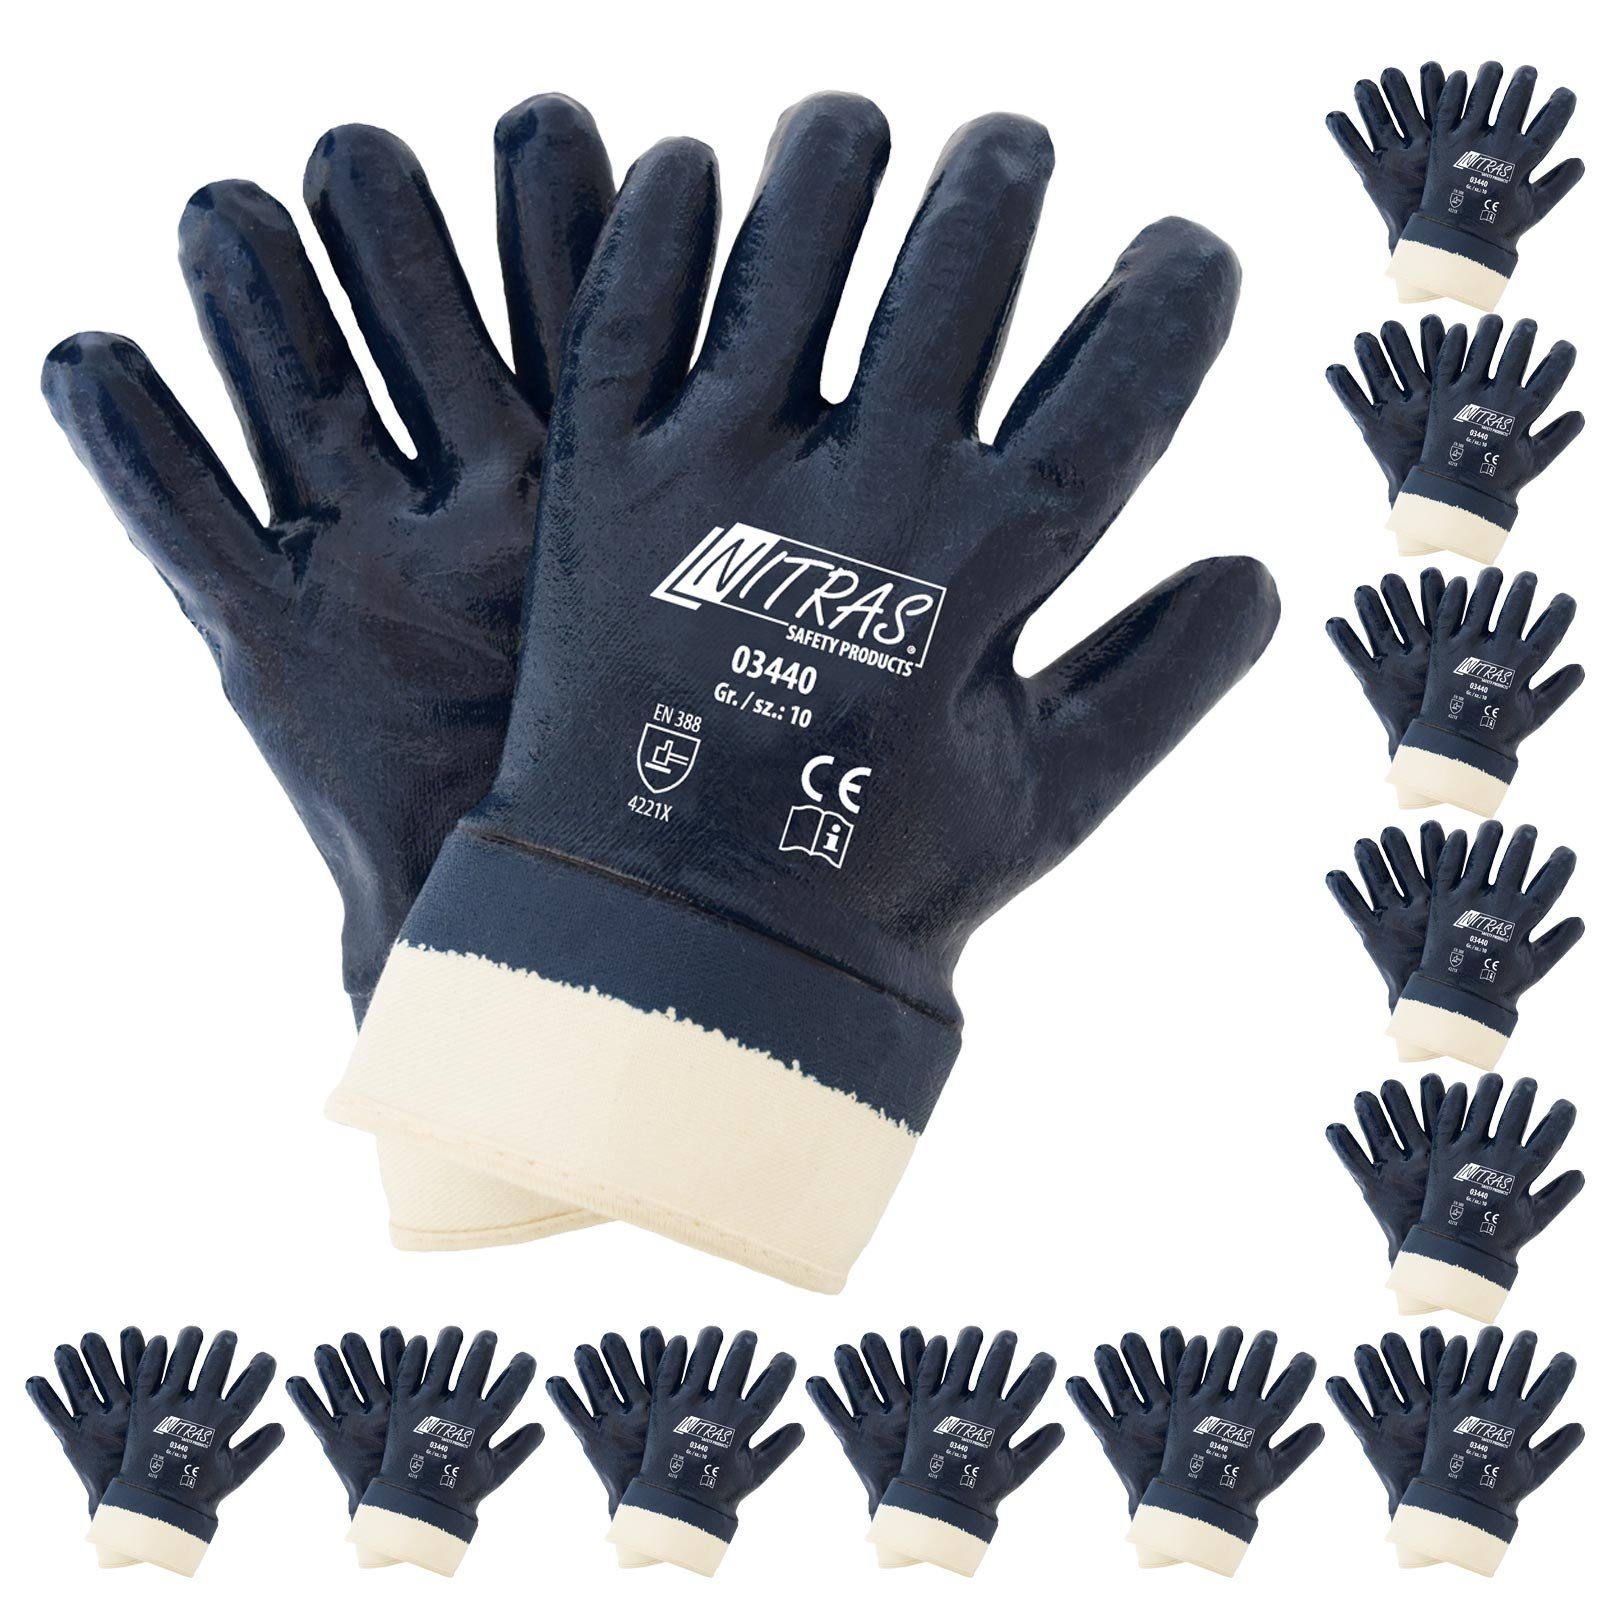 03440 Paar 12 Stulpe (Spar-Set) - Arbeitshandschuhe mit Nitrilhandschuhe Nitril-Handschuhe NITRAS Nitras